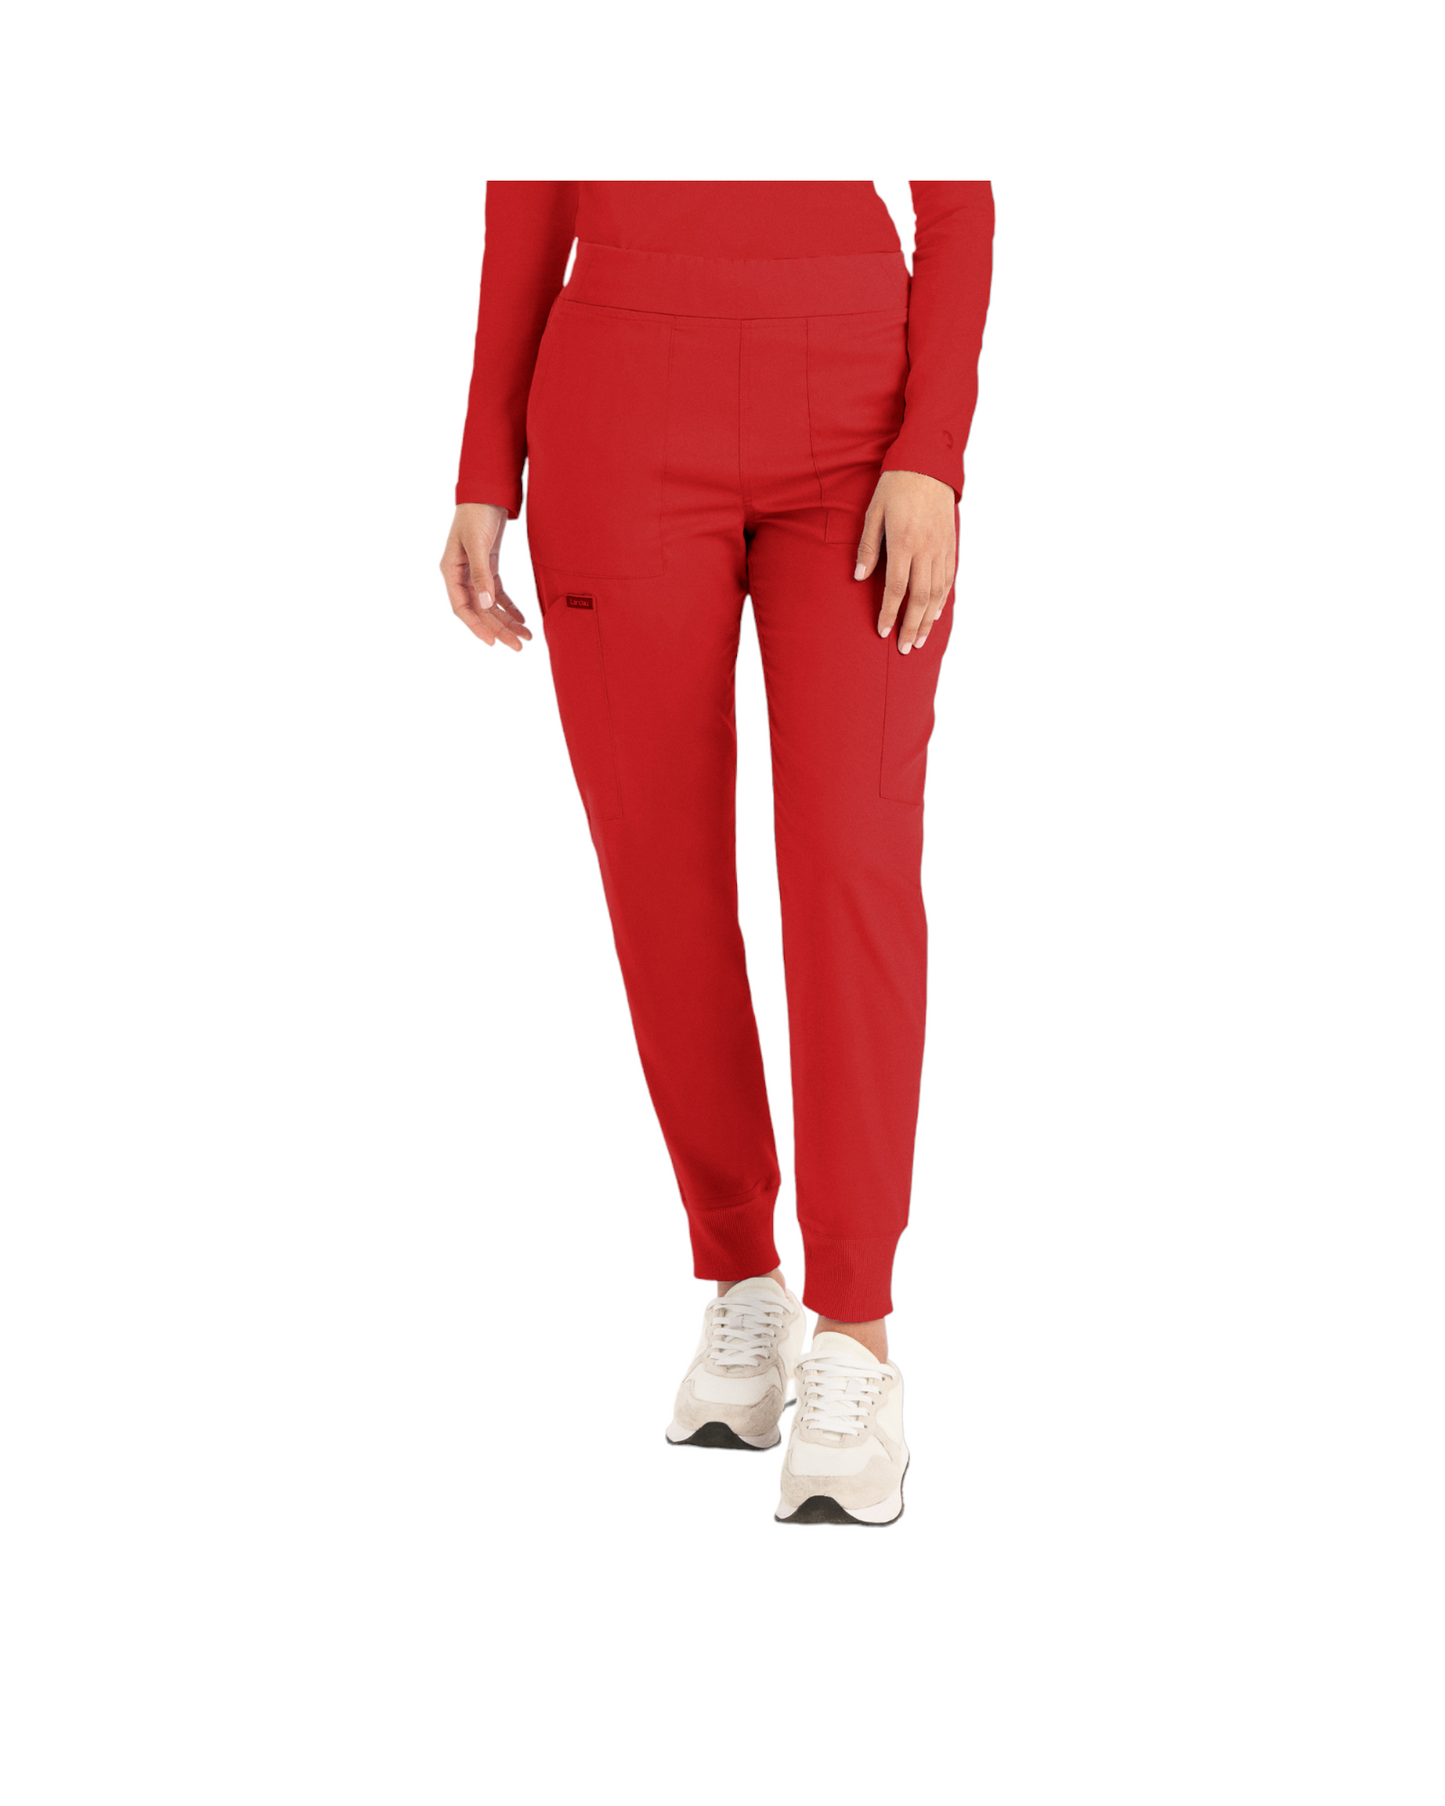 Pantalon de style jogger 6 poches pour femmes Landau Proflex #LB406 couleur Rouge